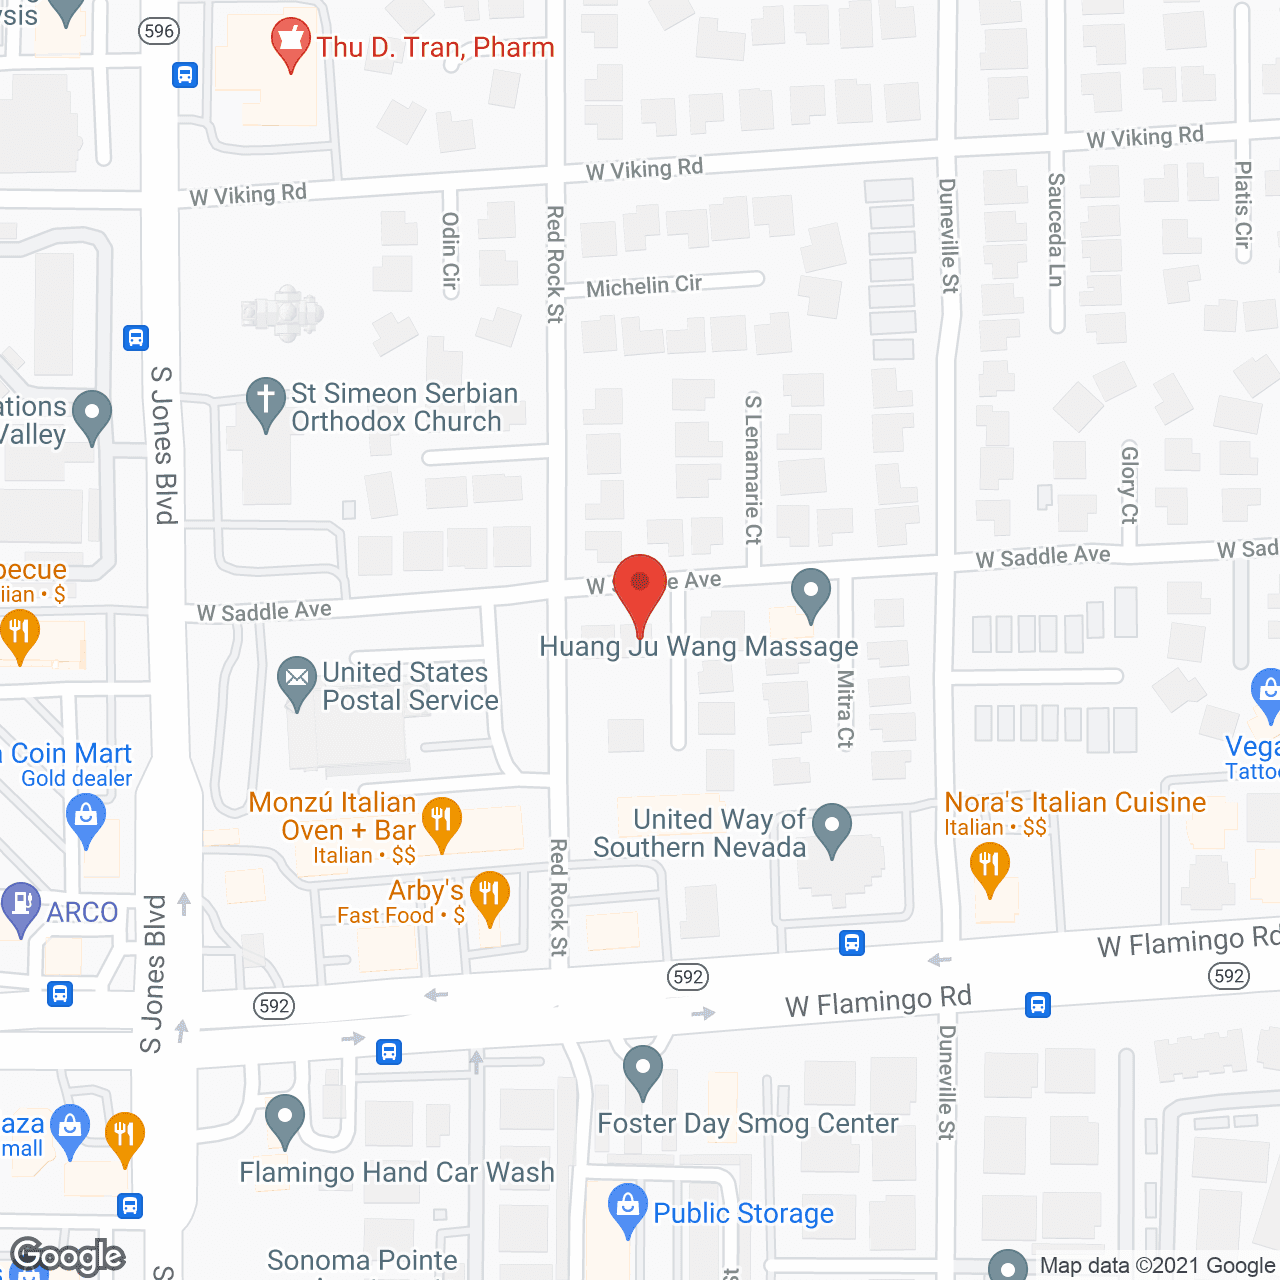 Ross Senior Residence in google map